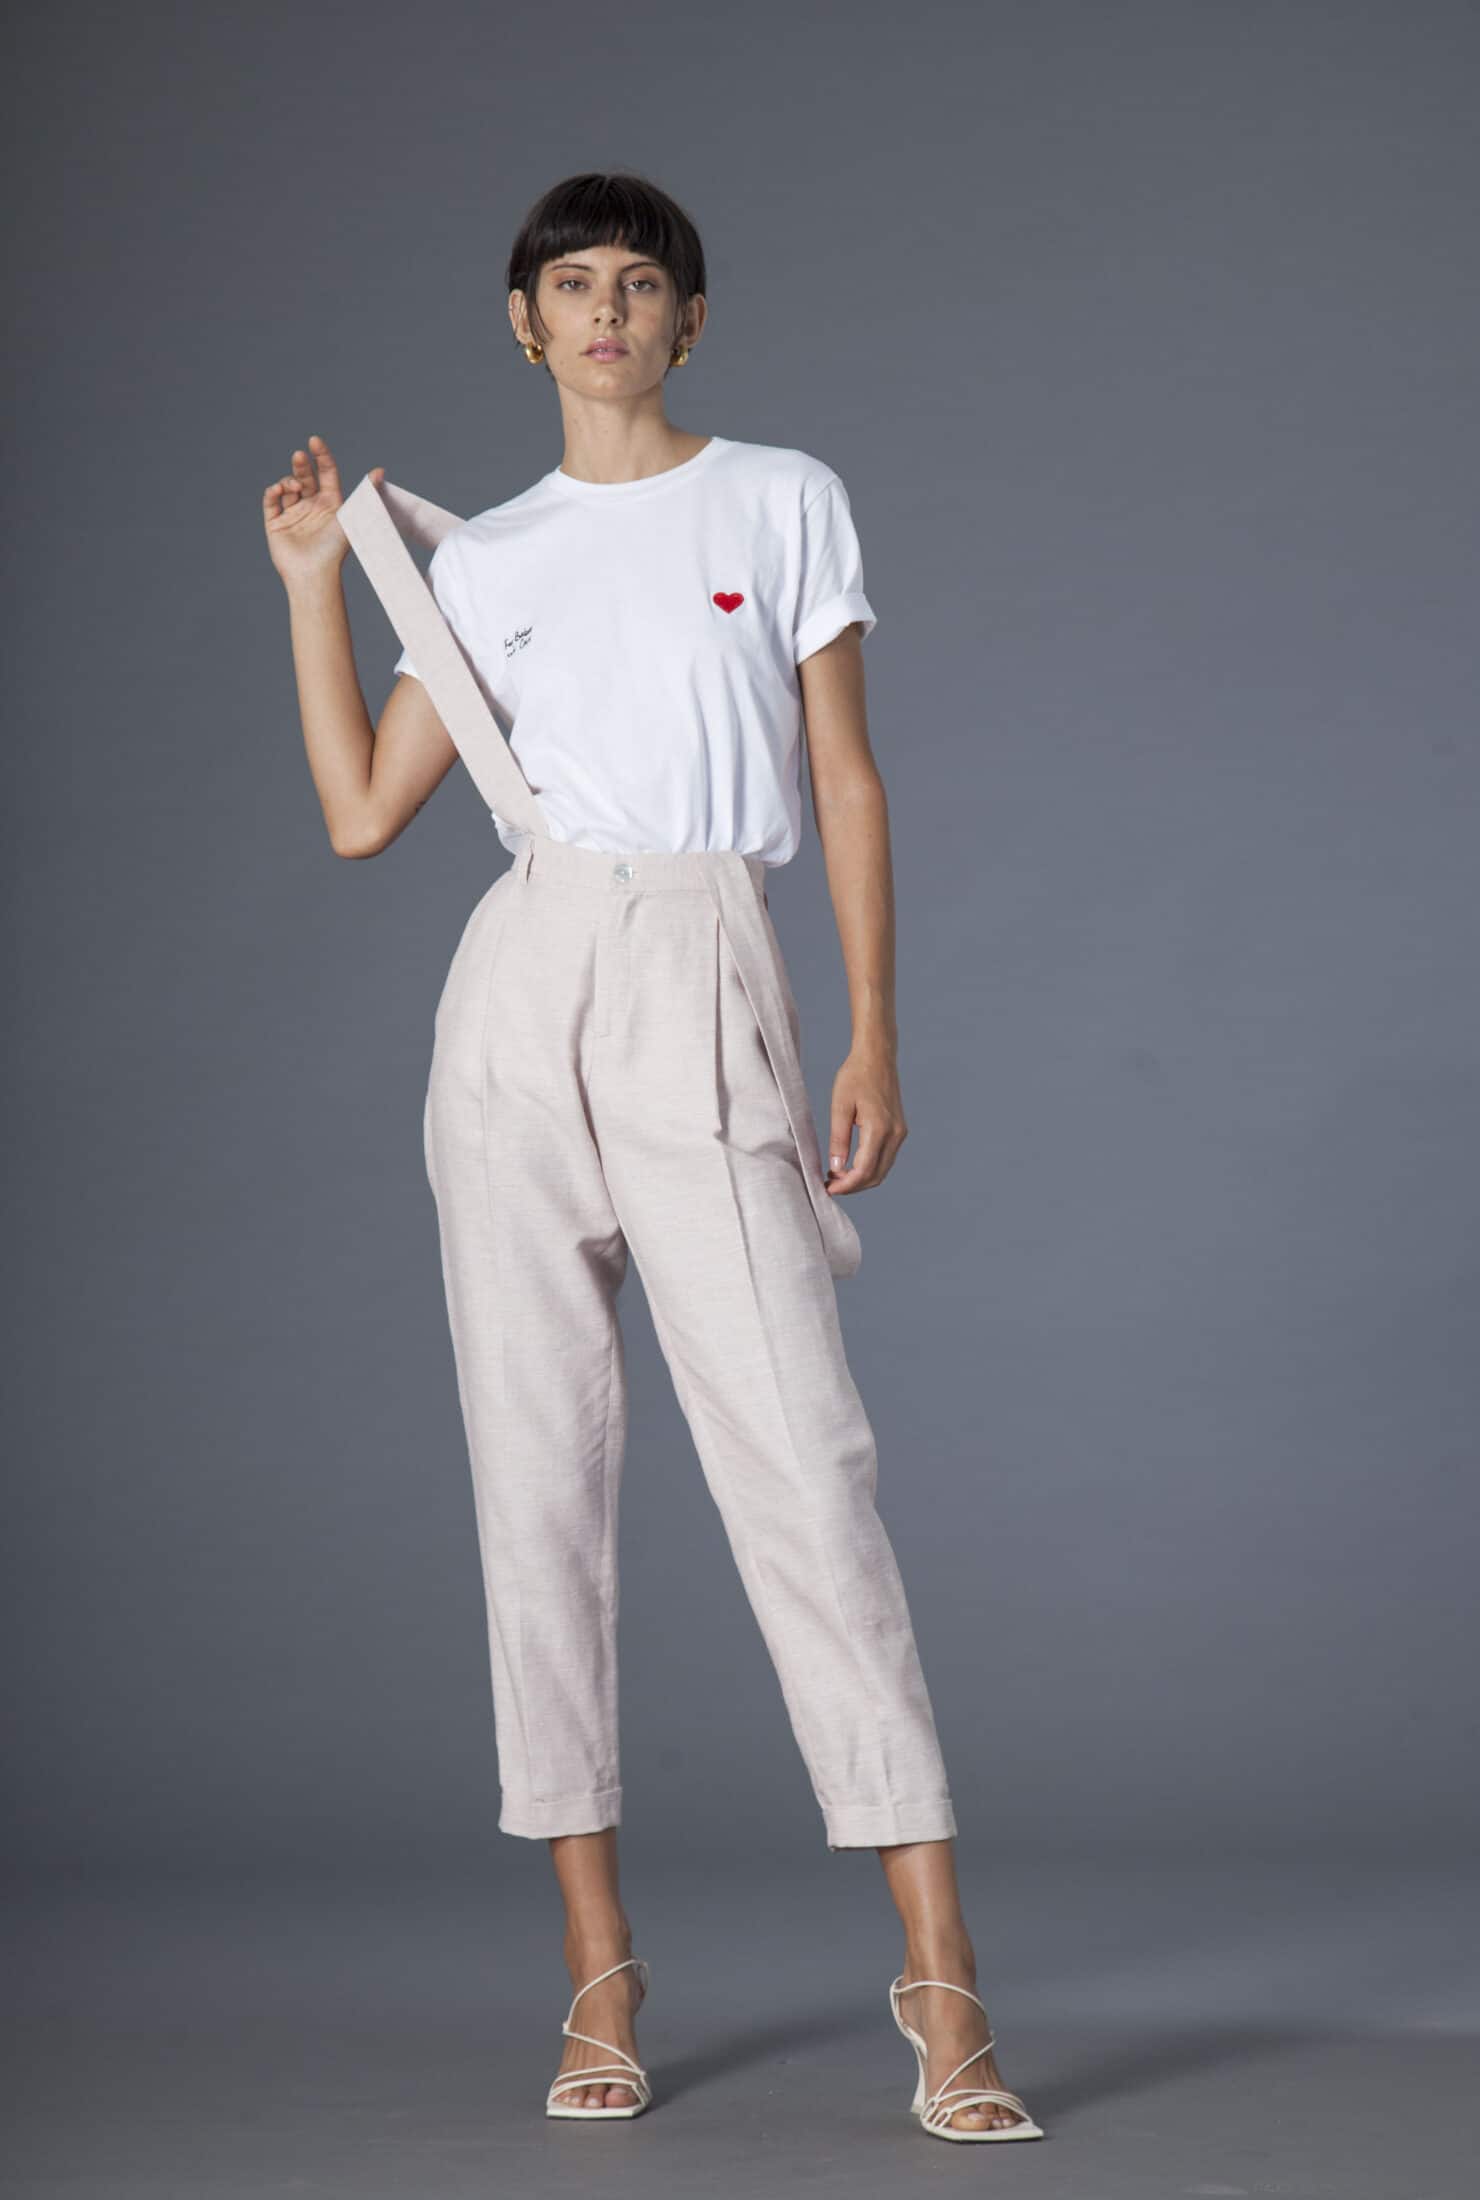 Col·lecció Souldaze Pantalons i pantalons curts Pantalons Jane rosa clar moda sostenible moda ètica